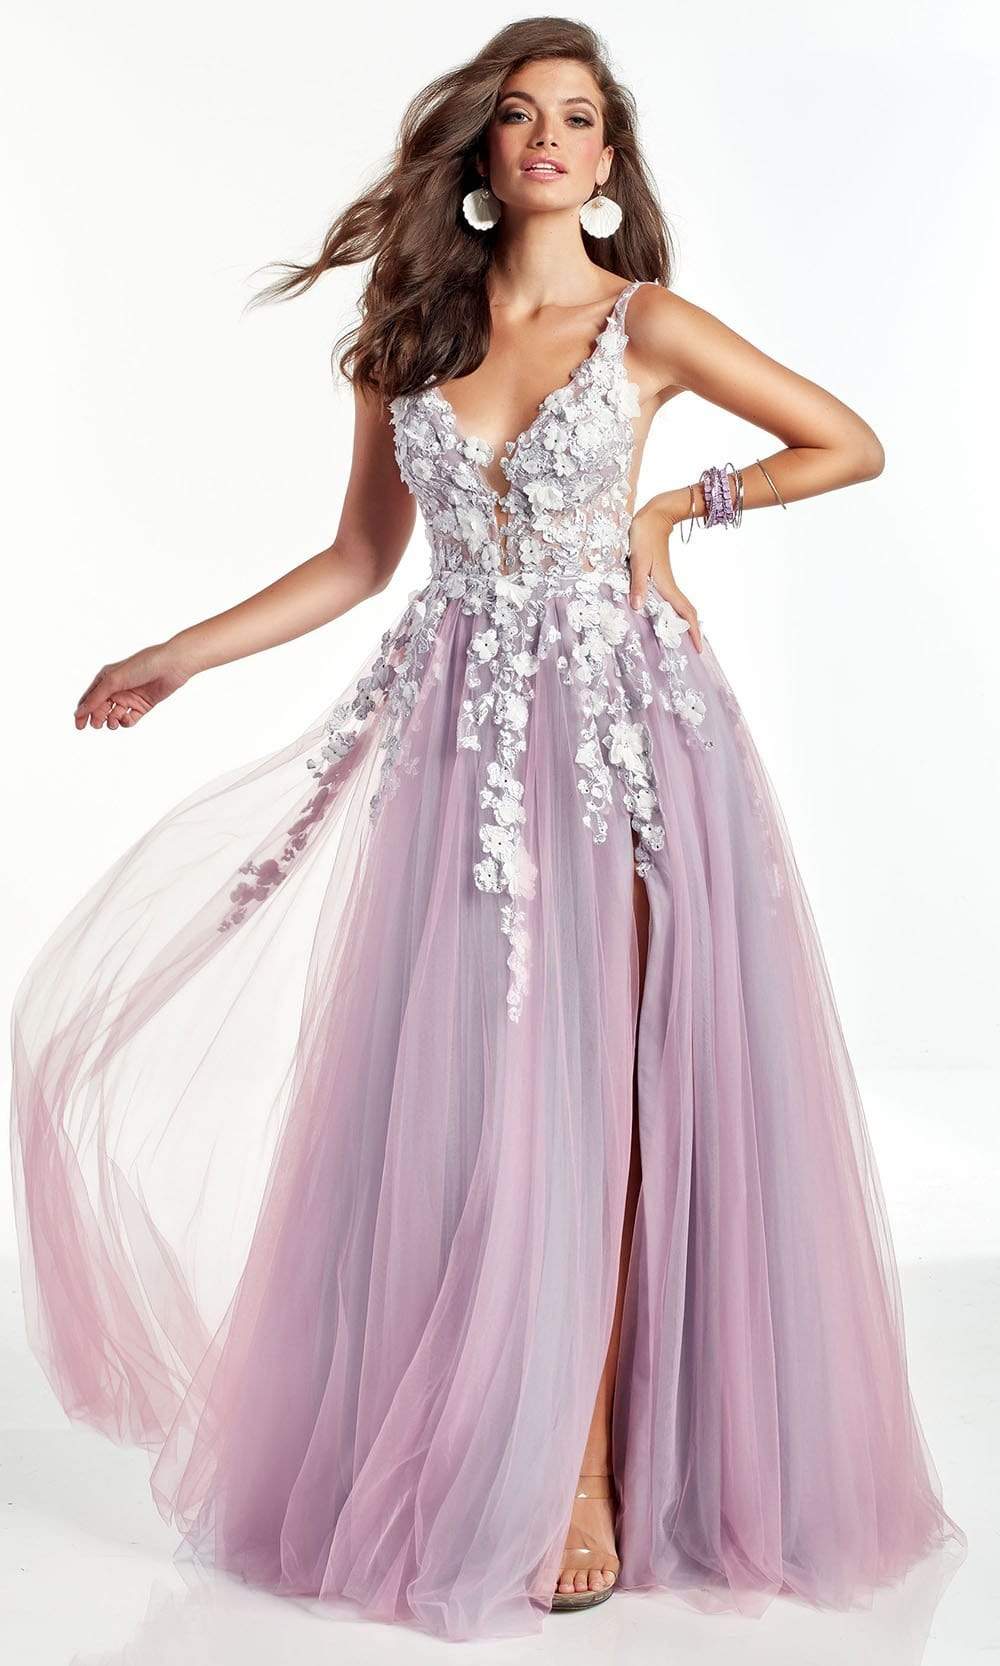 Alyce Paris - 60894 3D Floral Lace Tulle High Slit A-line Gown
